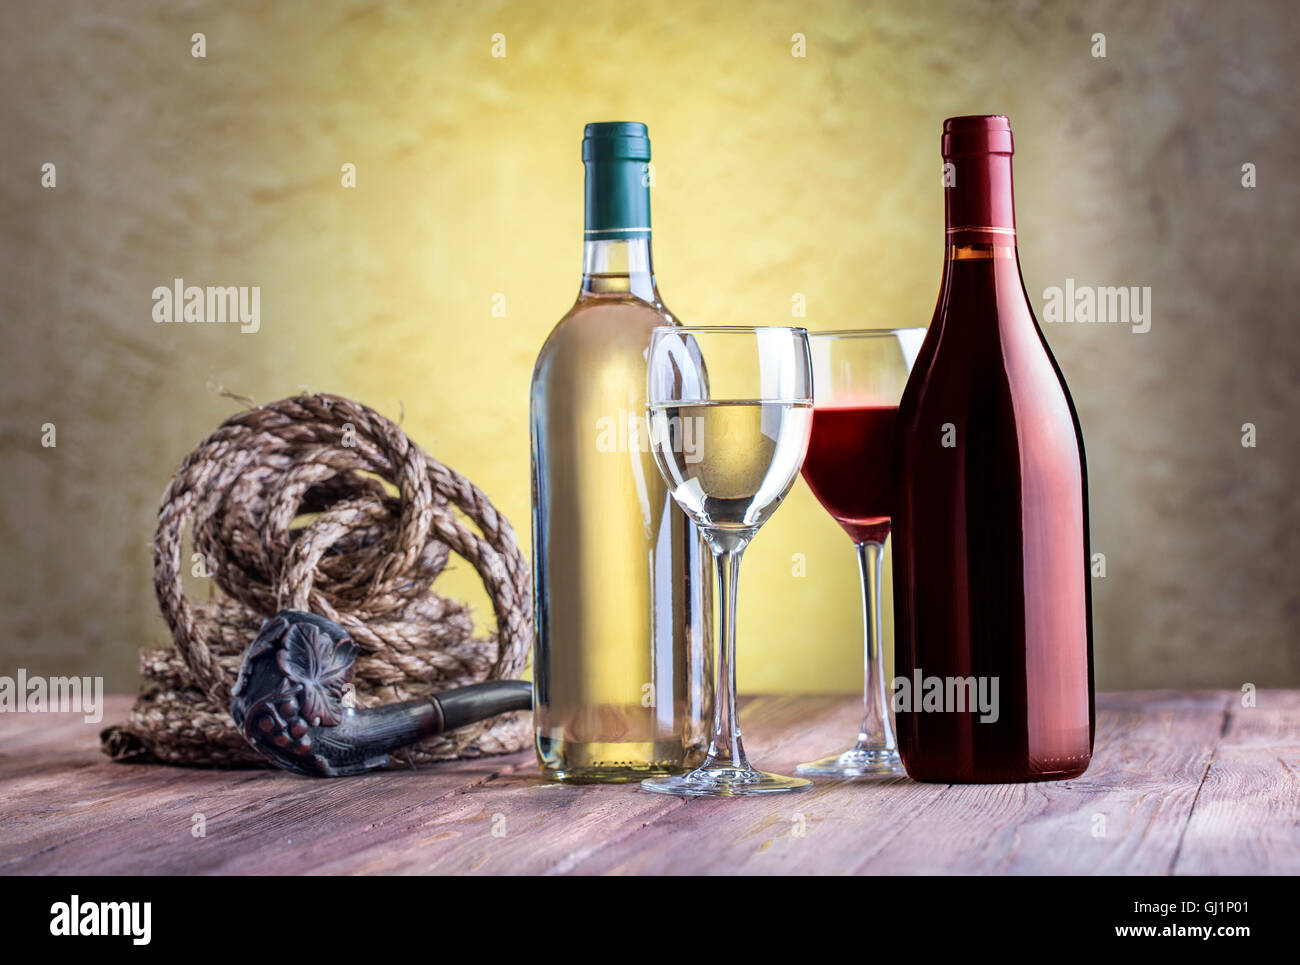 Stilleben mit Wein Glas, Flaschen, Seil und tabakpfeife auf Stuck Hintergrund. Stockfoto